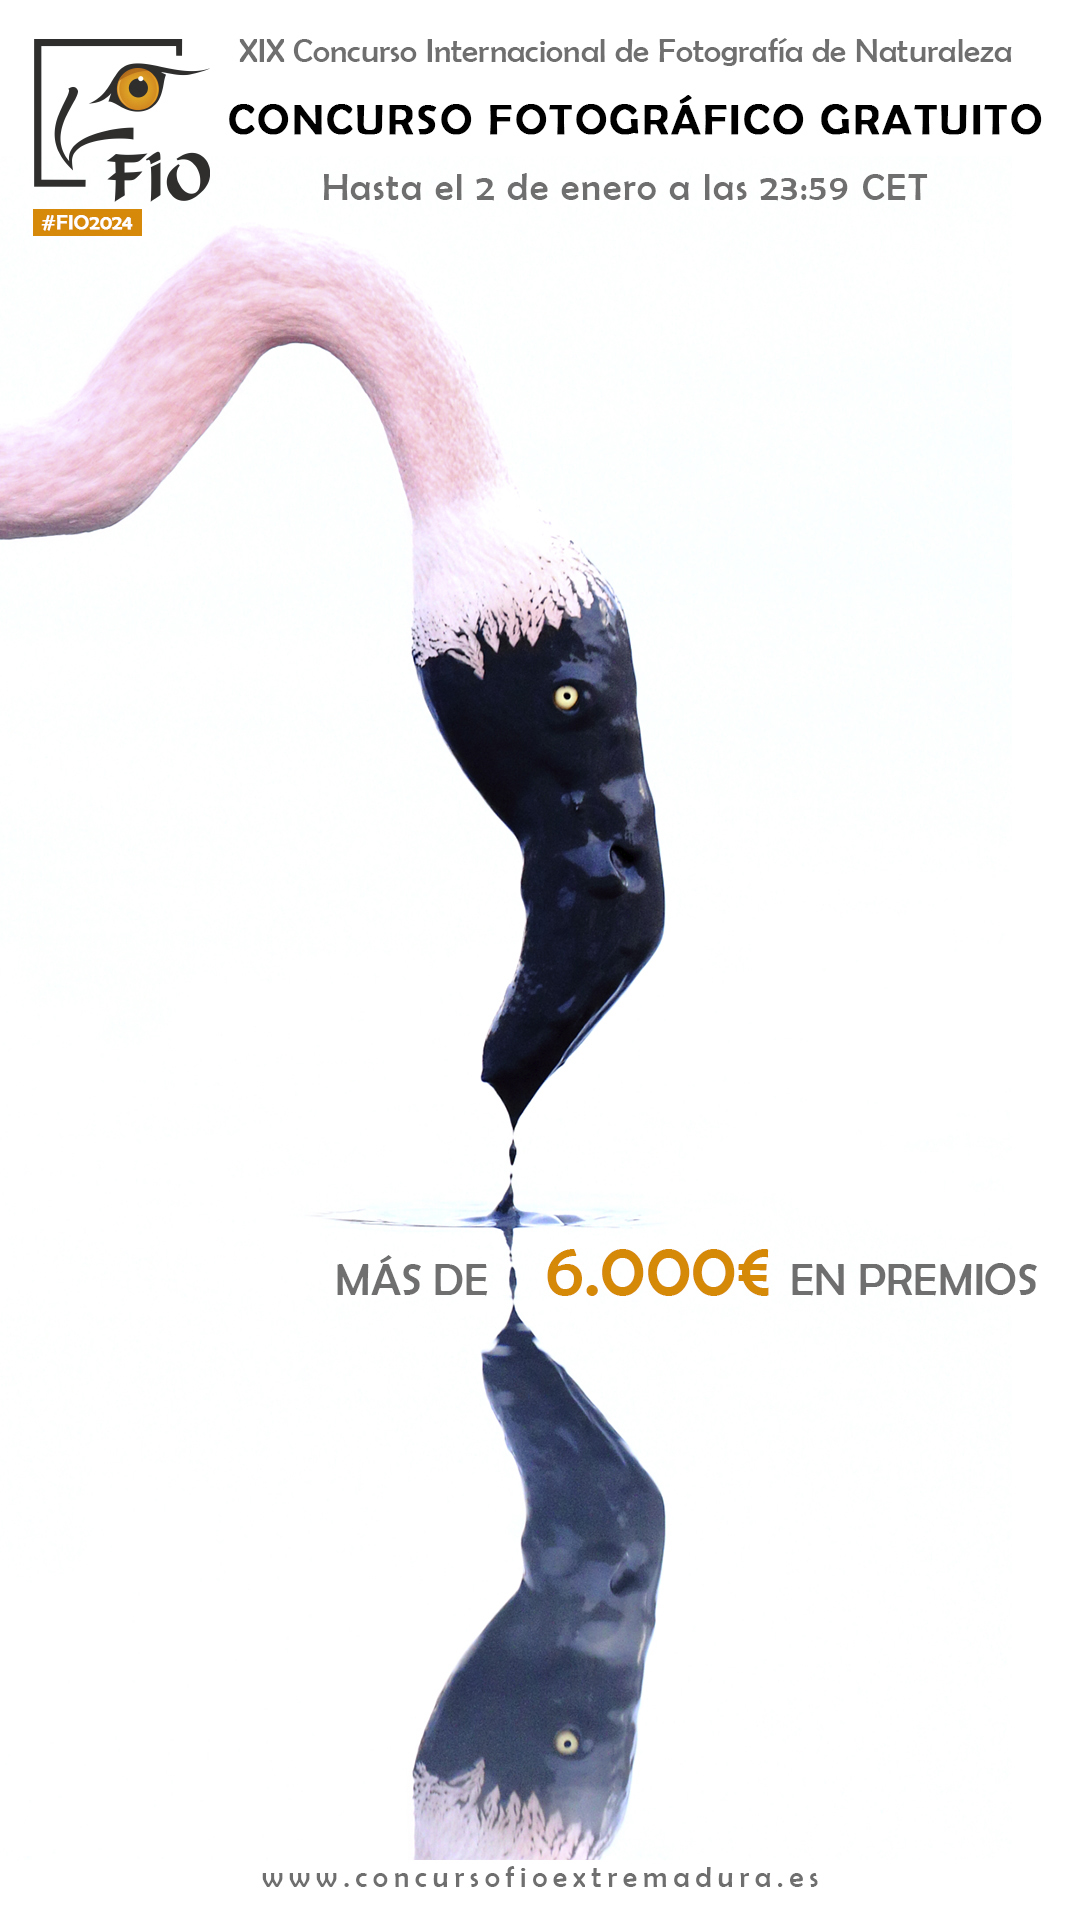 Image 1 of article FIO abre el plazo de su concurso fotográfico y aumenta el total de premios hasta 6.800 euros